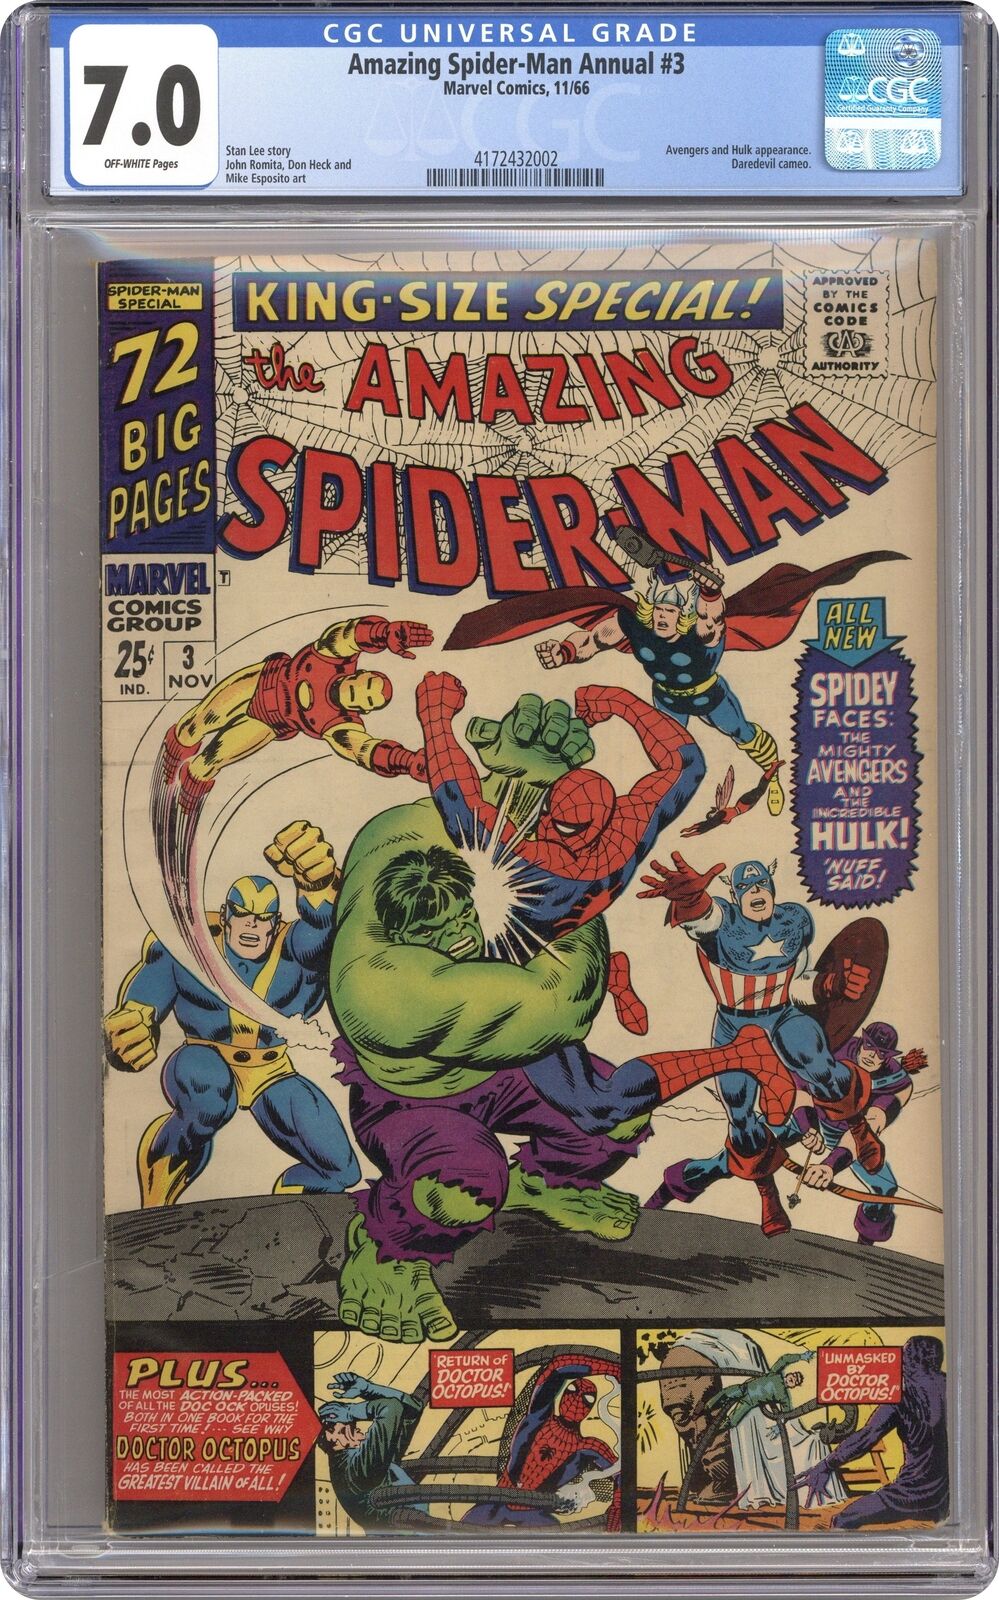 Amazing Spider-Man Annual #3 CGC 7.0 1966 4172432002